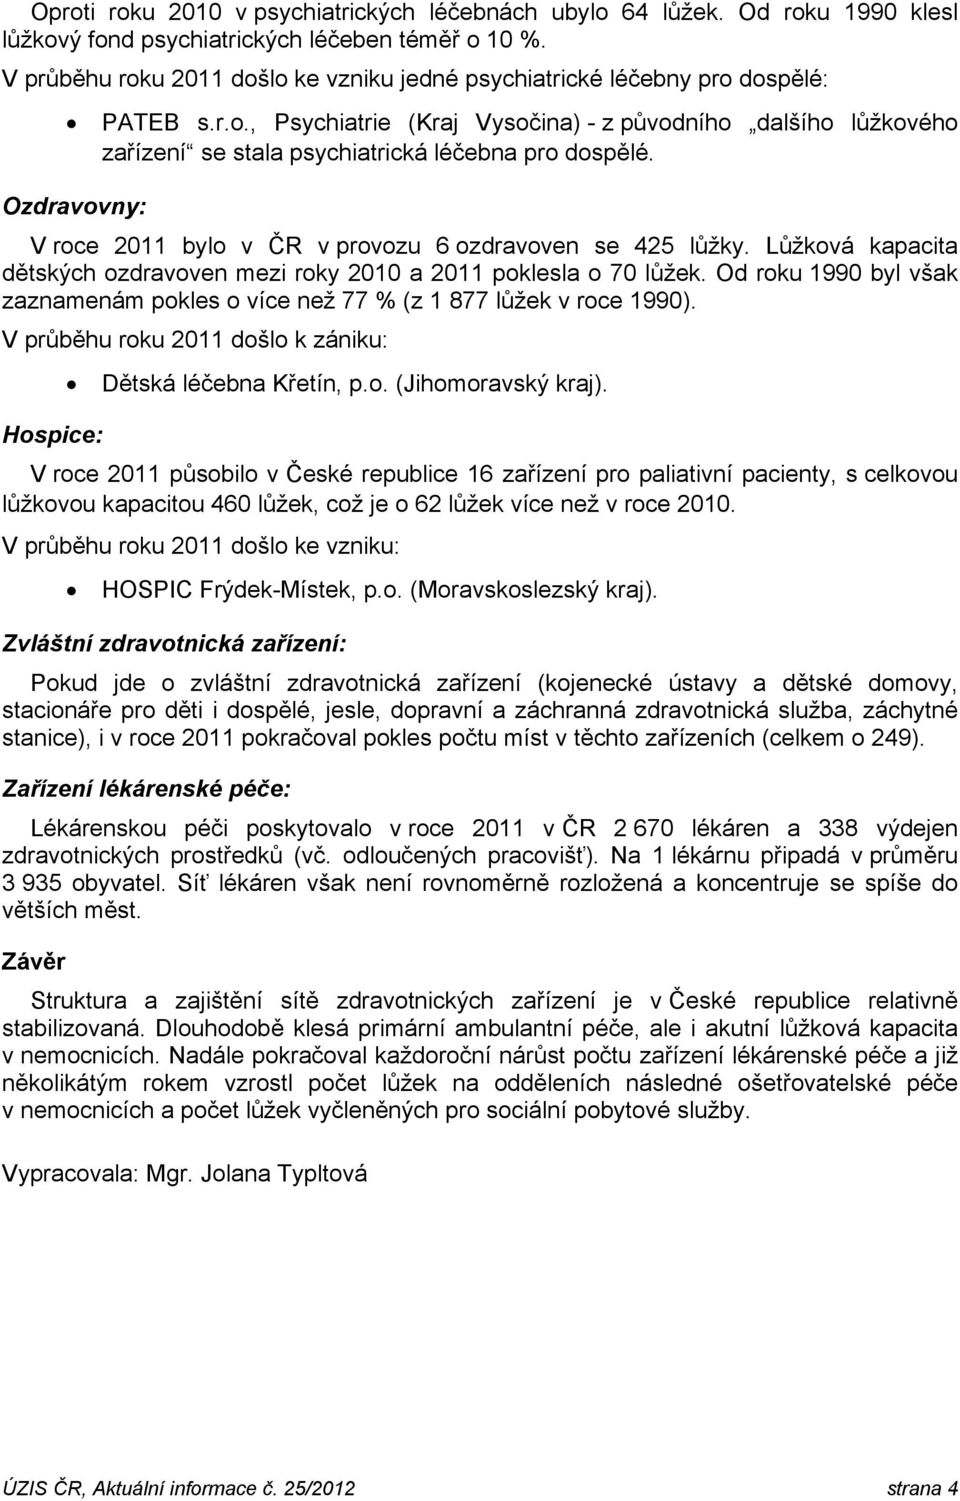 Ozdravovny: V roce 2011 bylo v ČR v provozu 6 ozdravoven se 425 lůžky. Lůžková kapacita dětských ozdravoven mezi roky 2010 a 2011 poklesla o 70 lůžek.